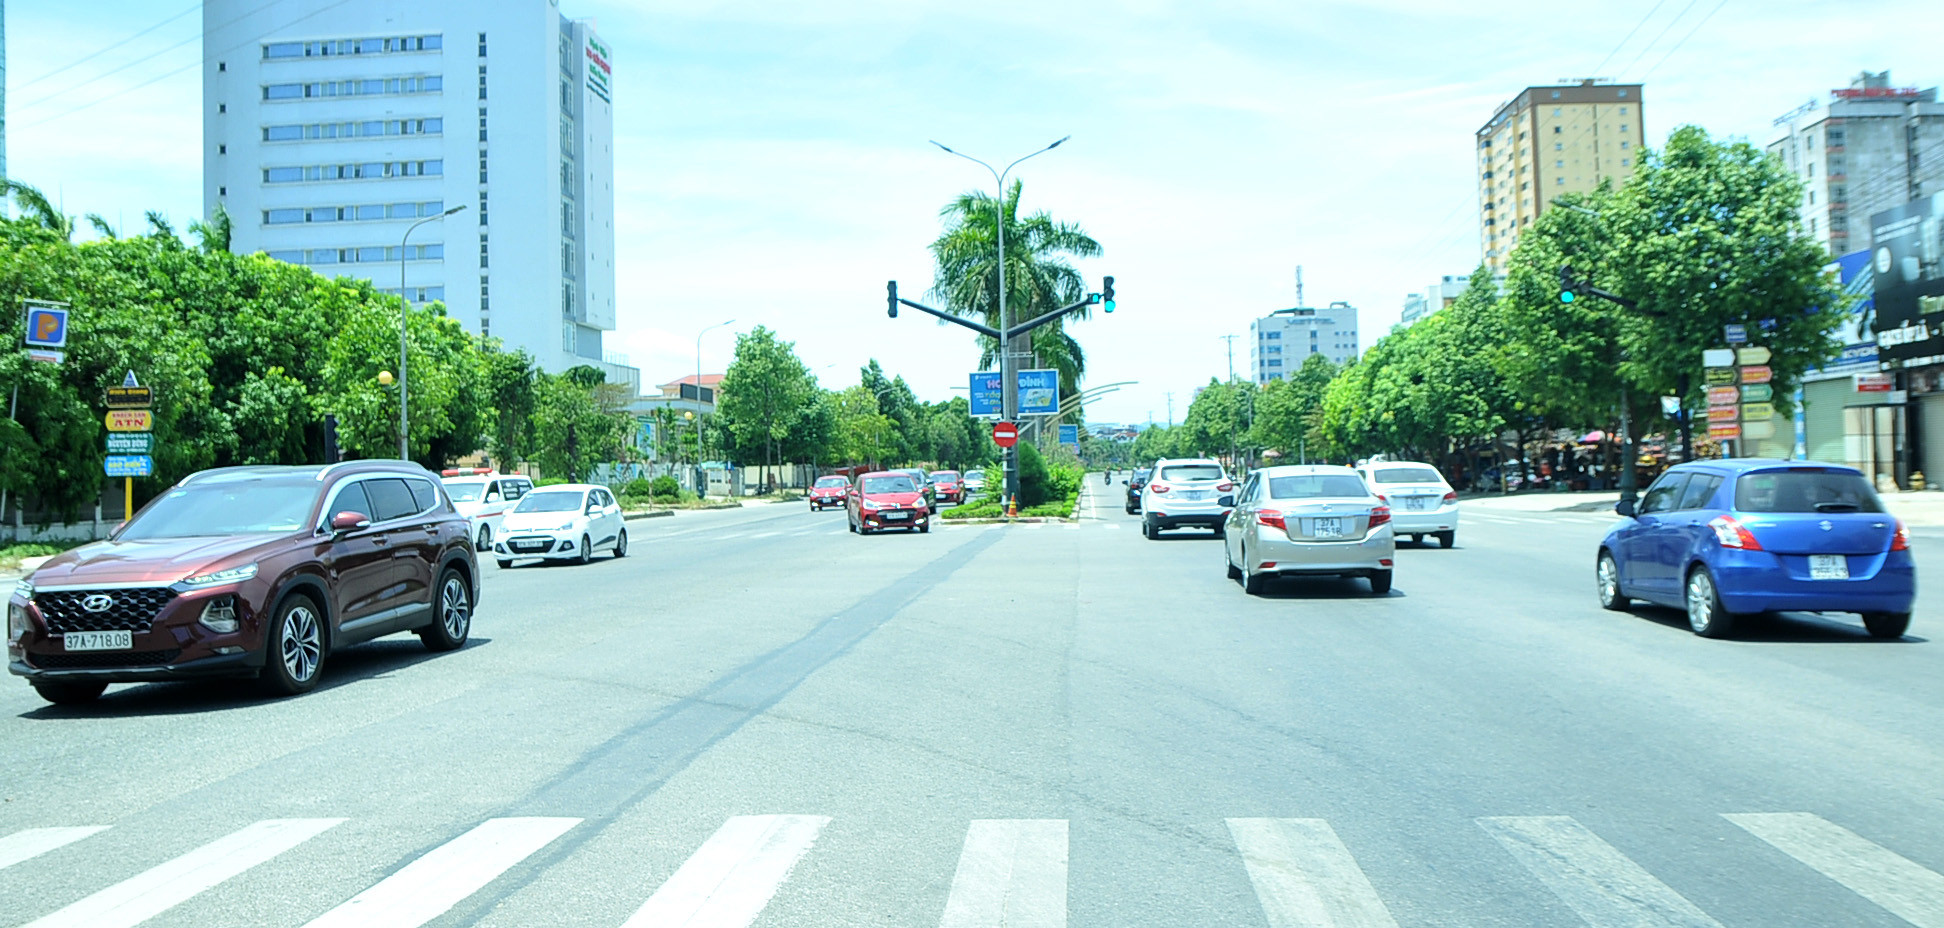 Đại lộ Lê-Nin cũng đã có rất đông xe cộ qua lại so với những ngày đầu thực hiện cách ly xã hội. Ảnh: Tiến Đông 